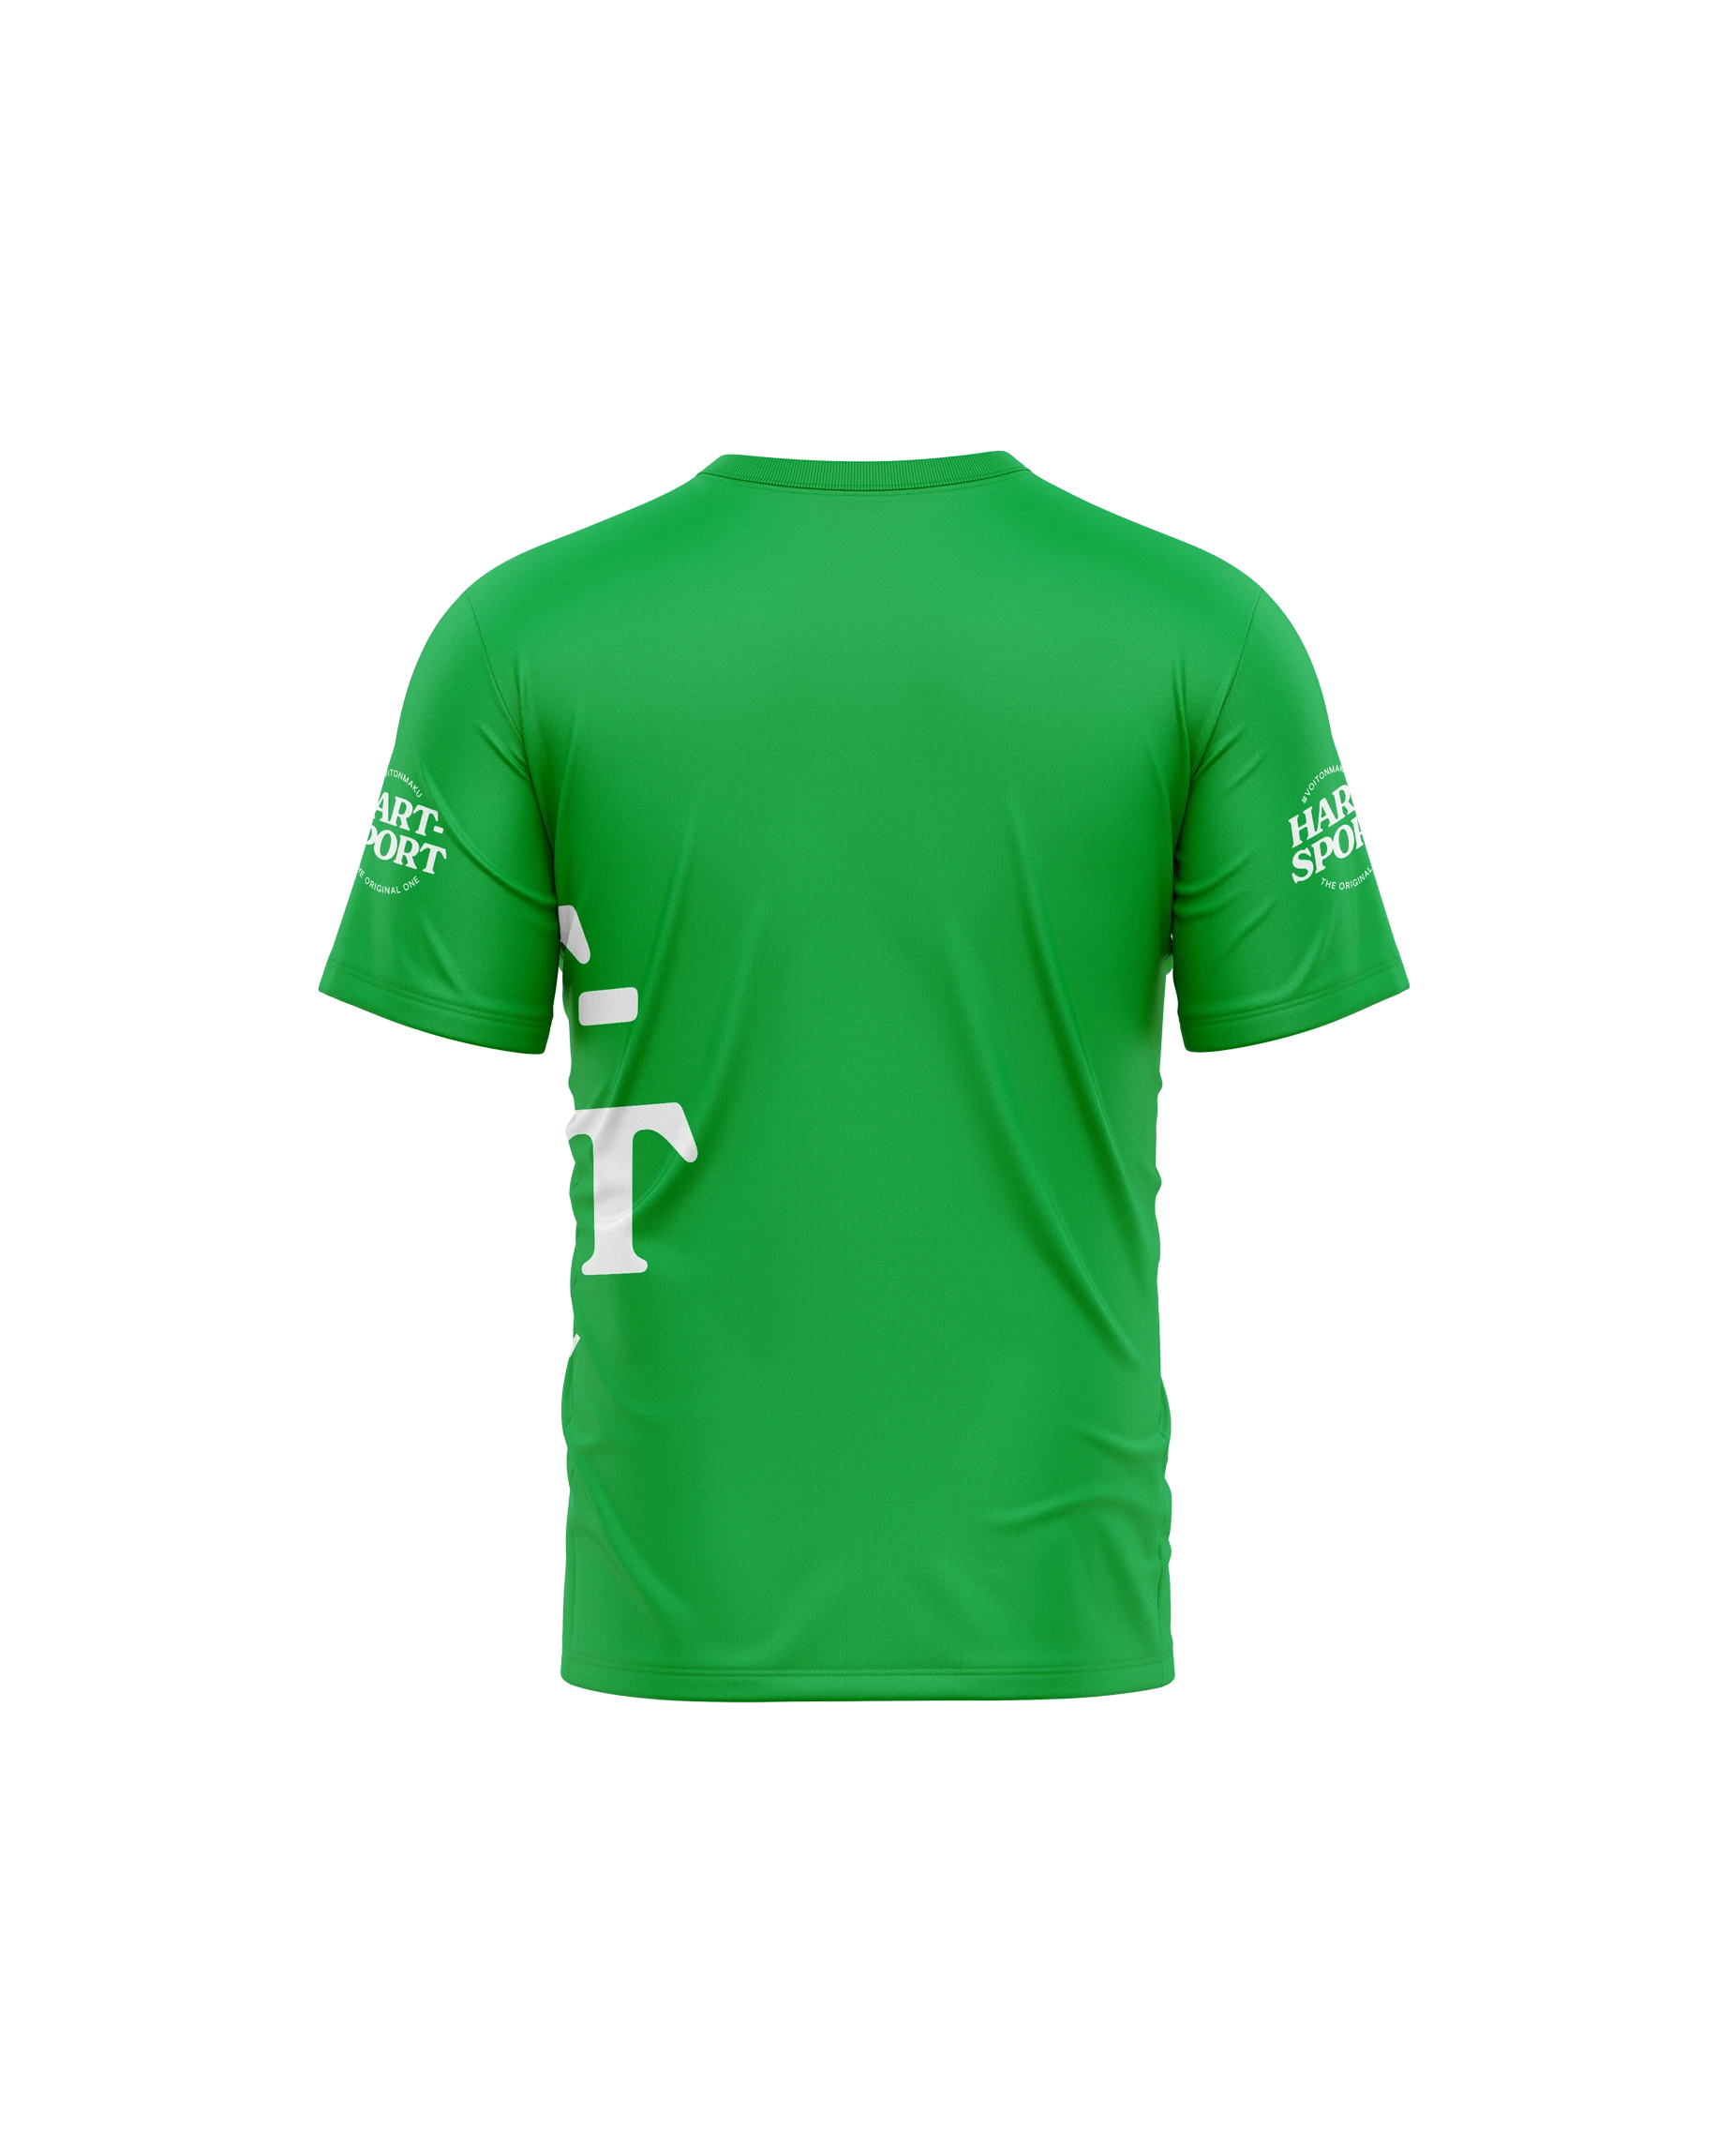 Men's green regular t-shirt